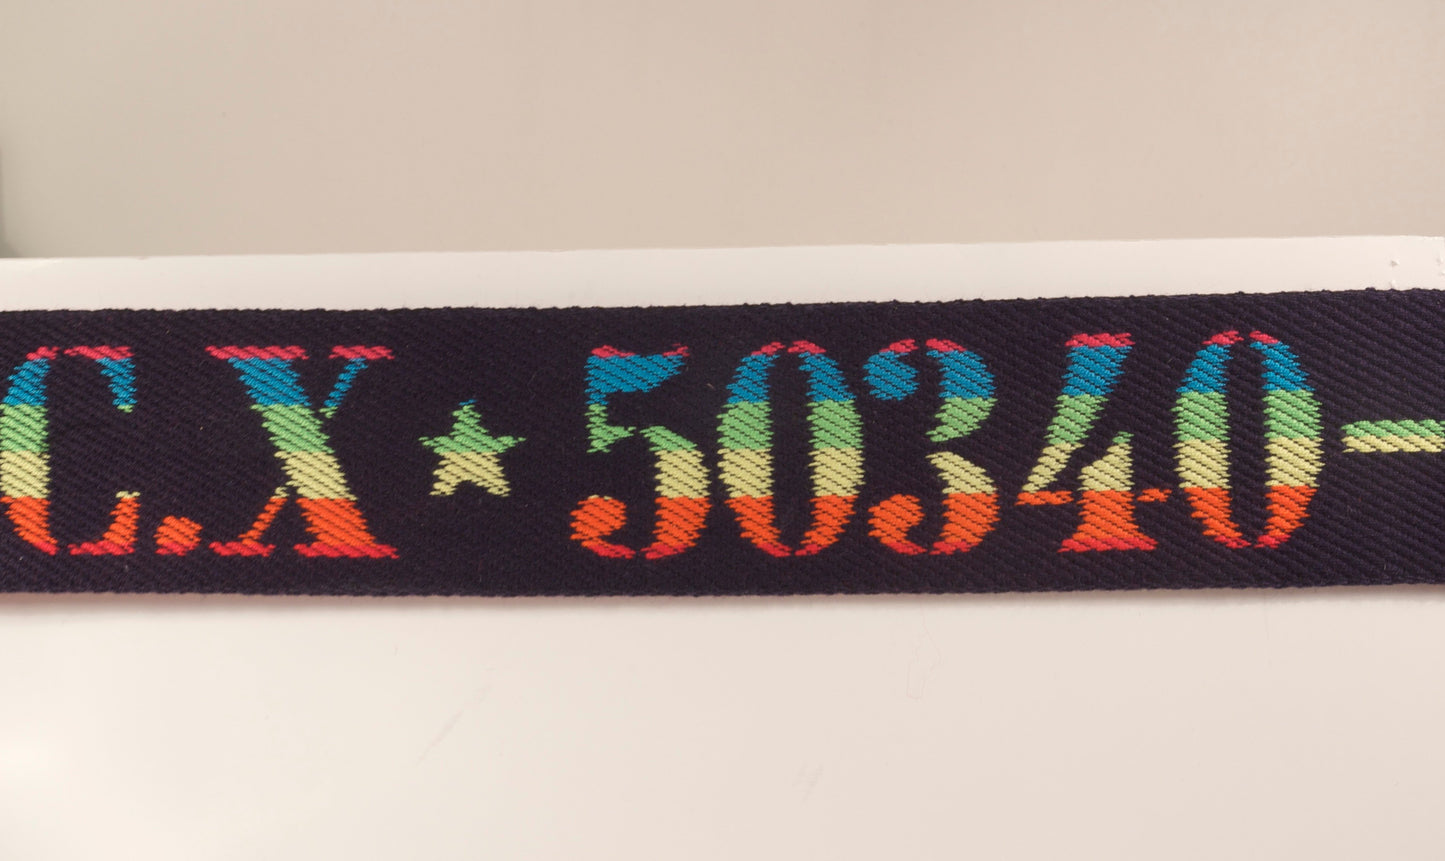 Ribbon w/ text "CX * 50340" 50 mm